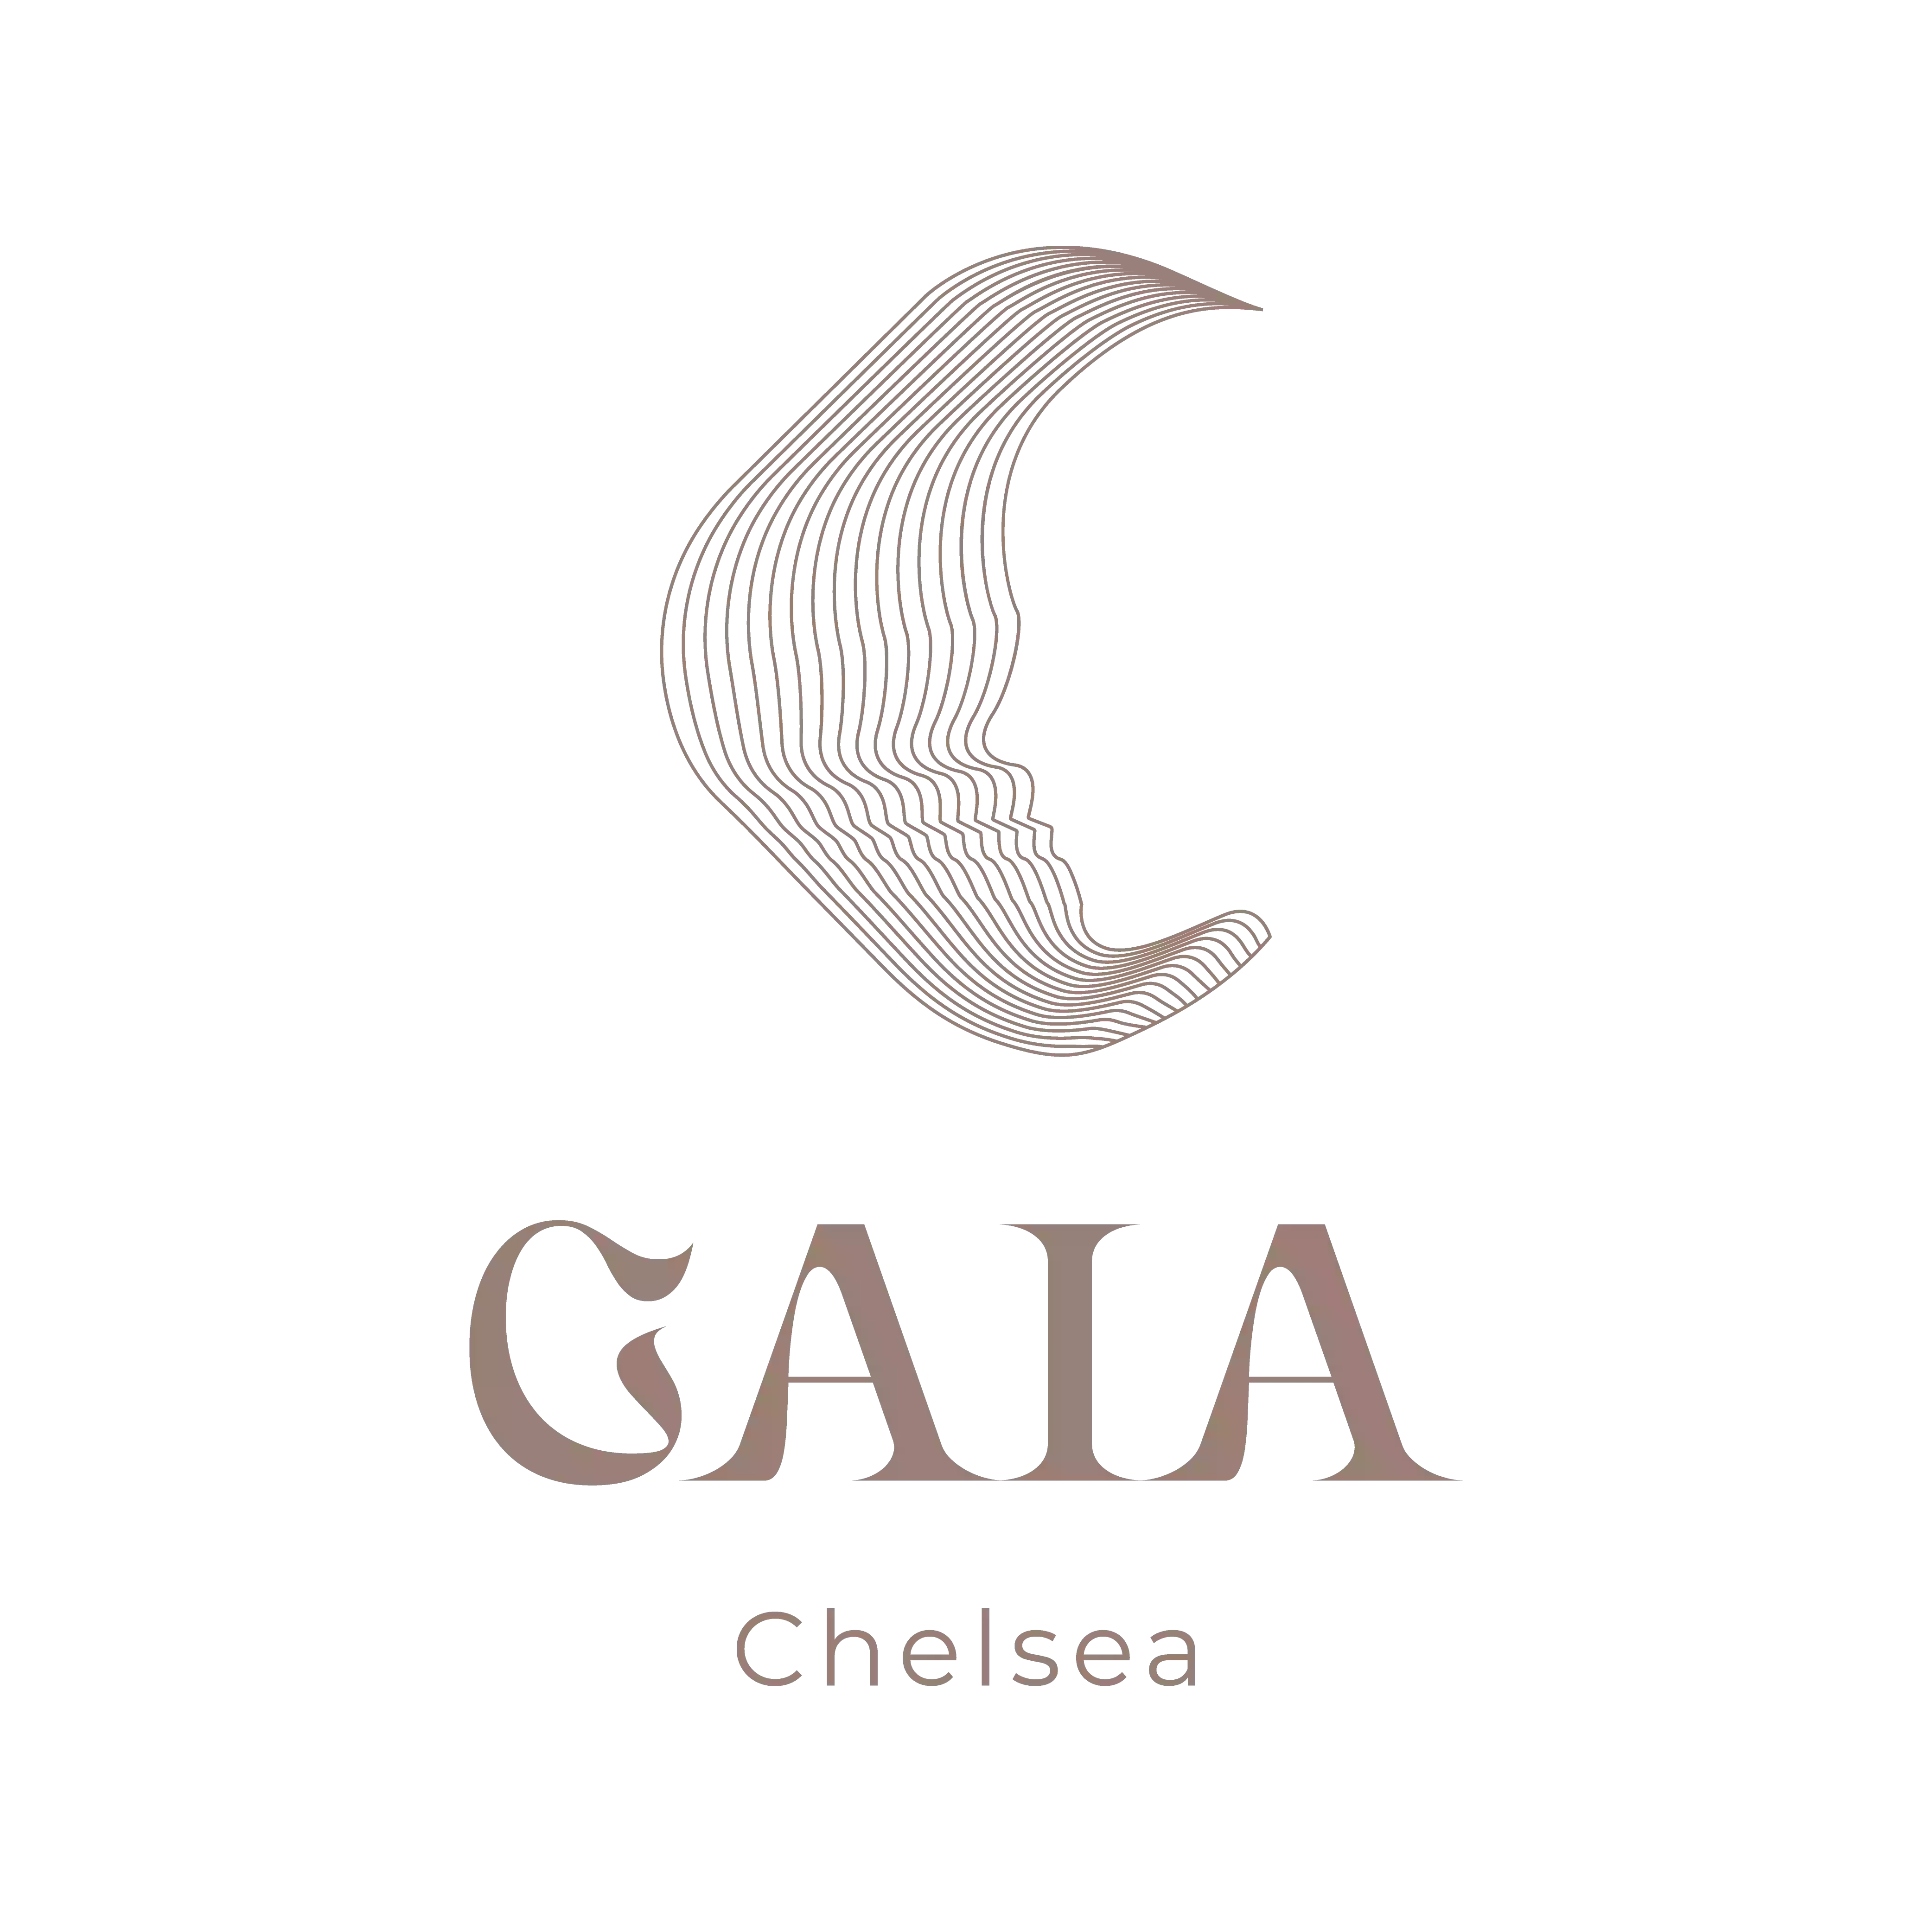 Gaia Chelsea